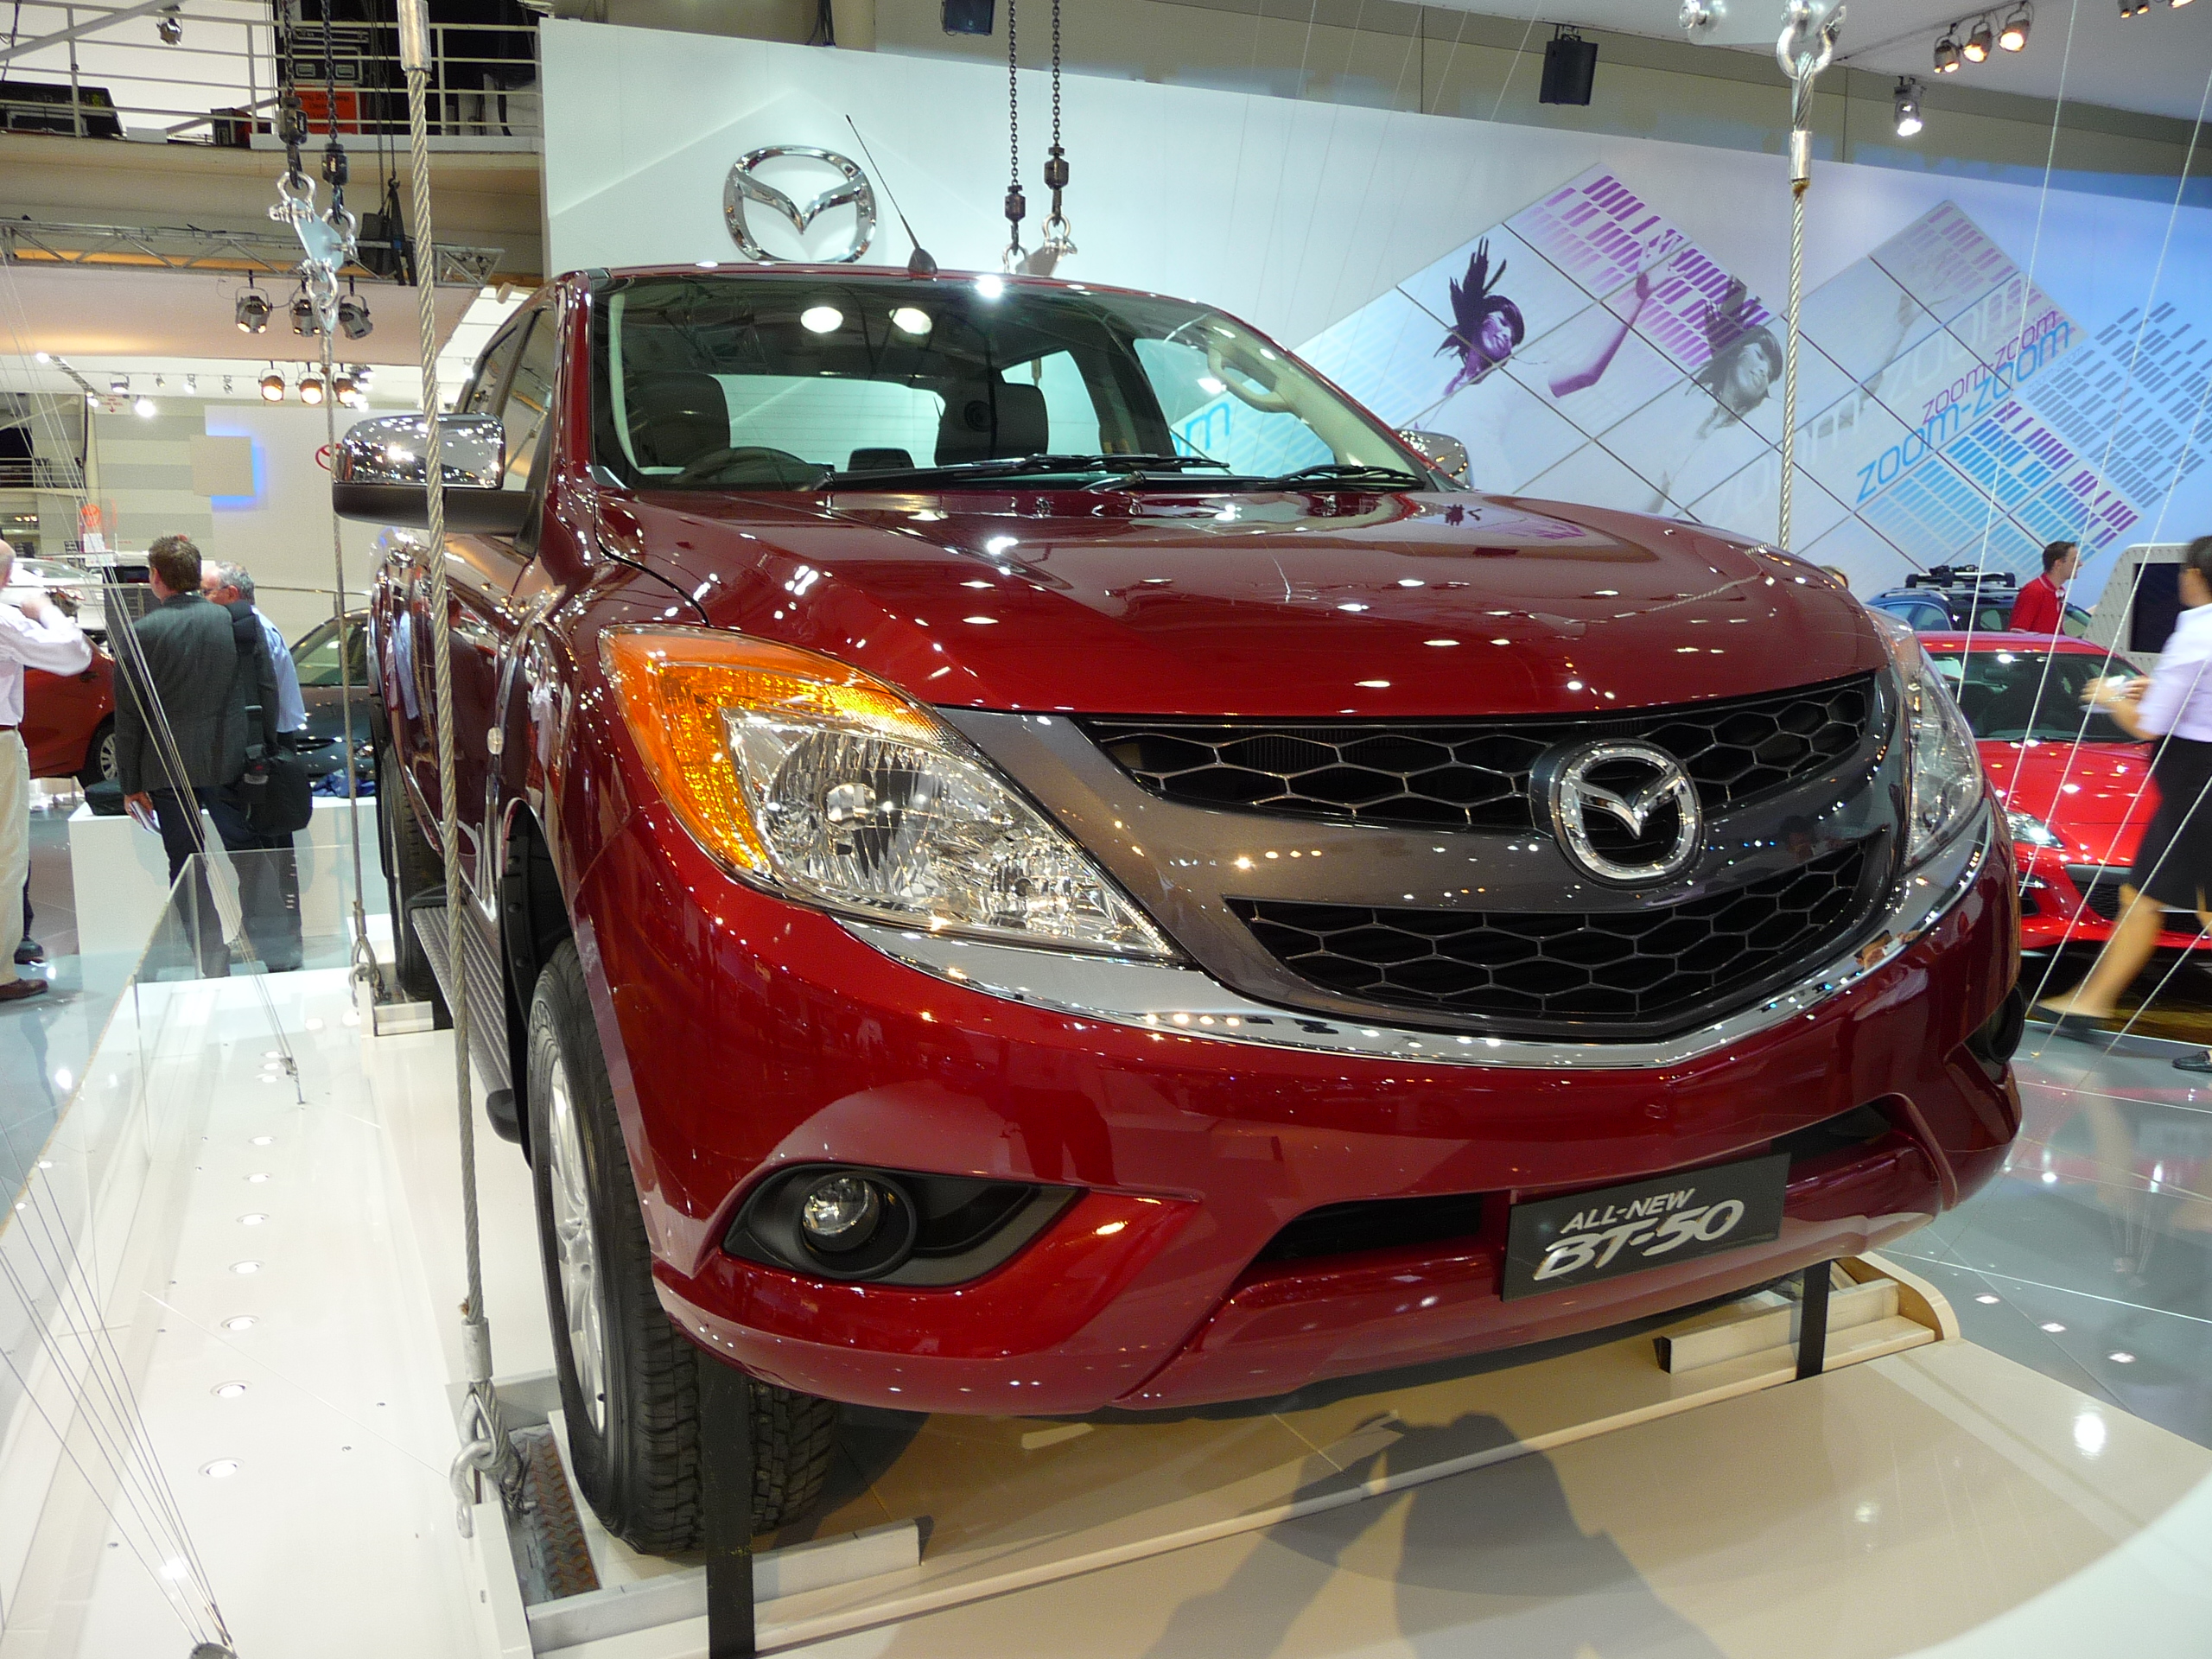 Mazda BT-50 "Activity Lifestyle Vehicle" | Flickr - Photo Sharing!